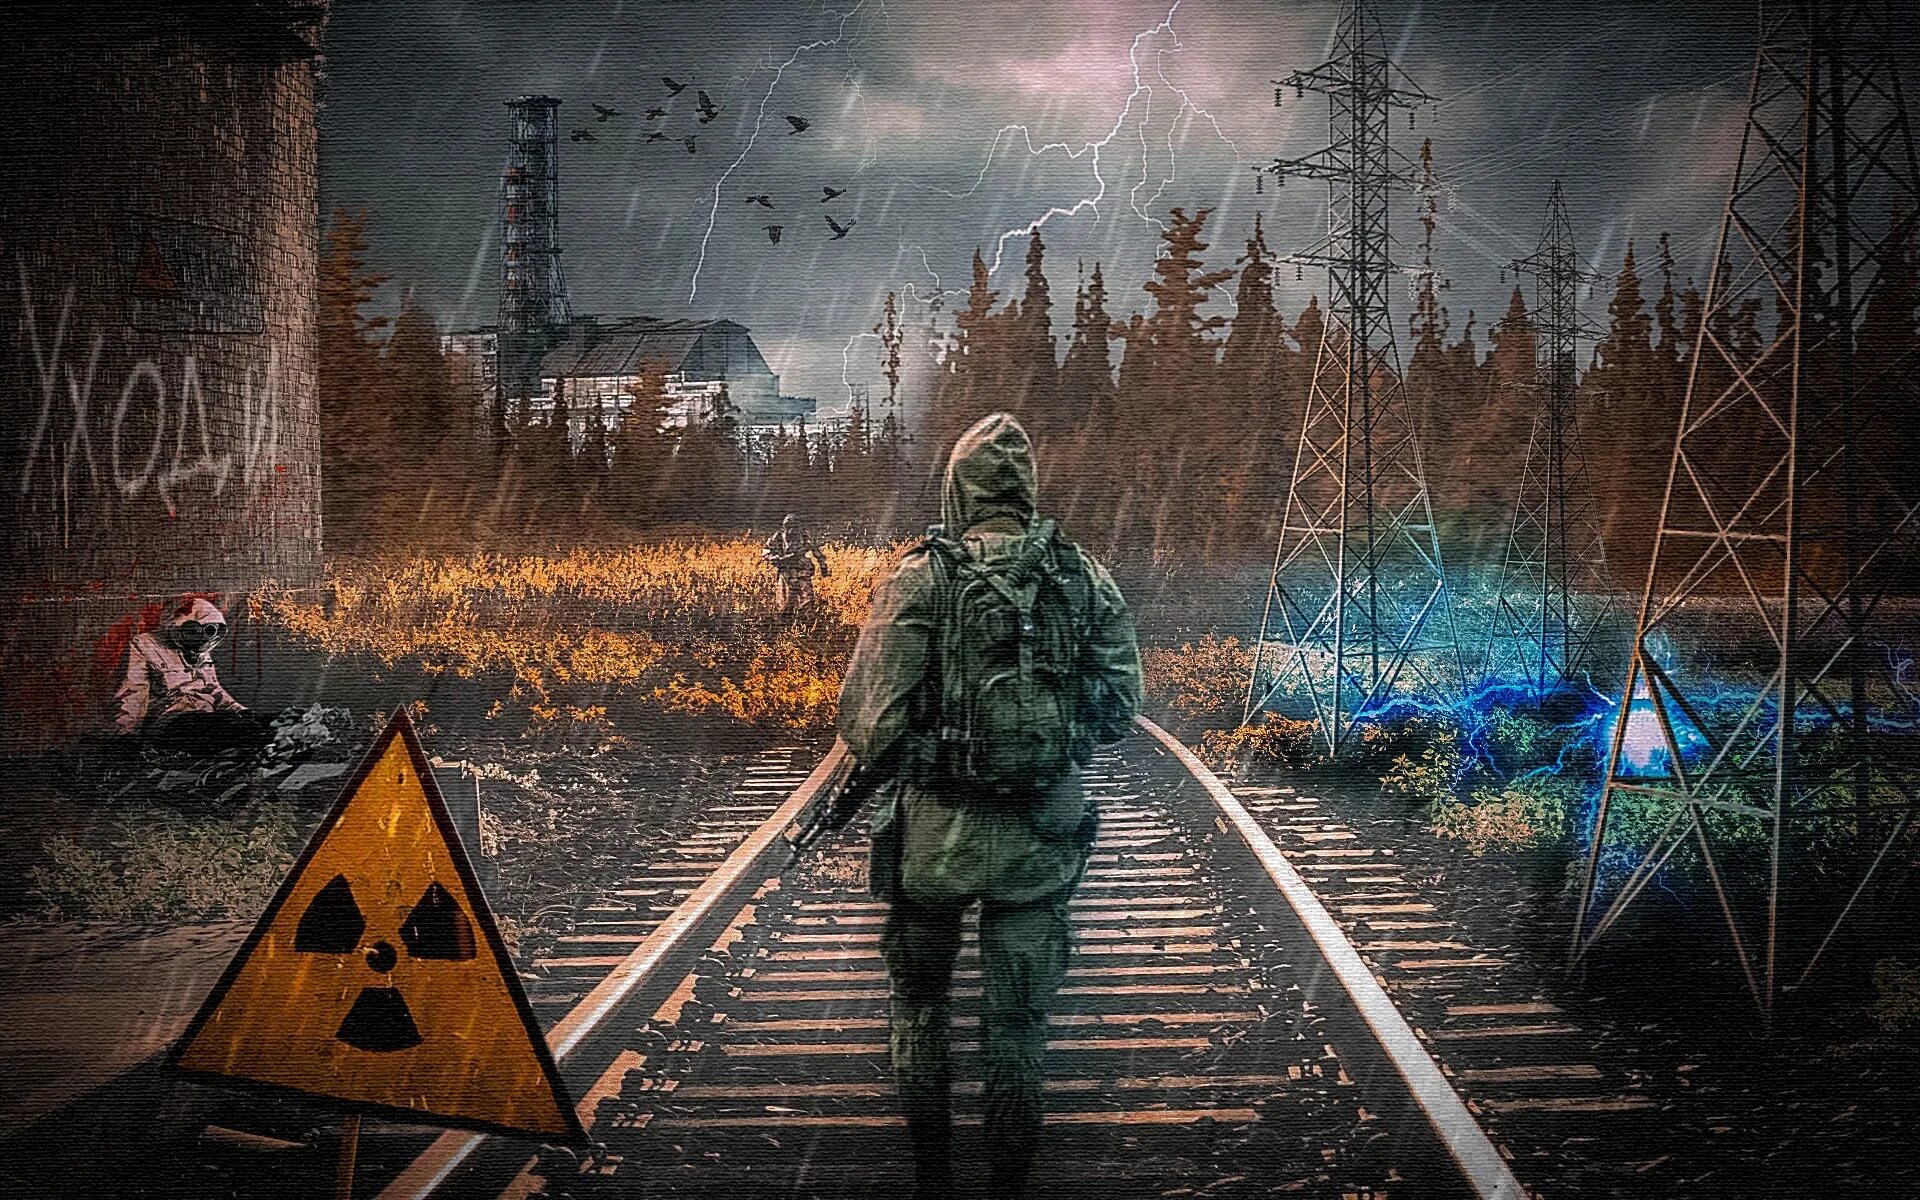 Сталкер 2 арт монолит. Зона Чернобыль s.t.a.l.k.e.r. Сталкер арт с Чернобылем 2.